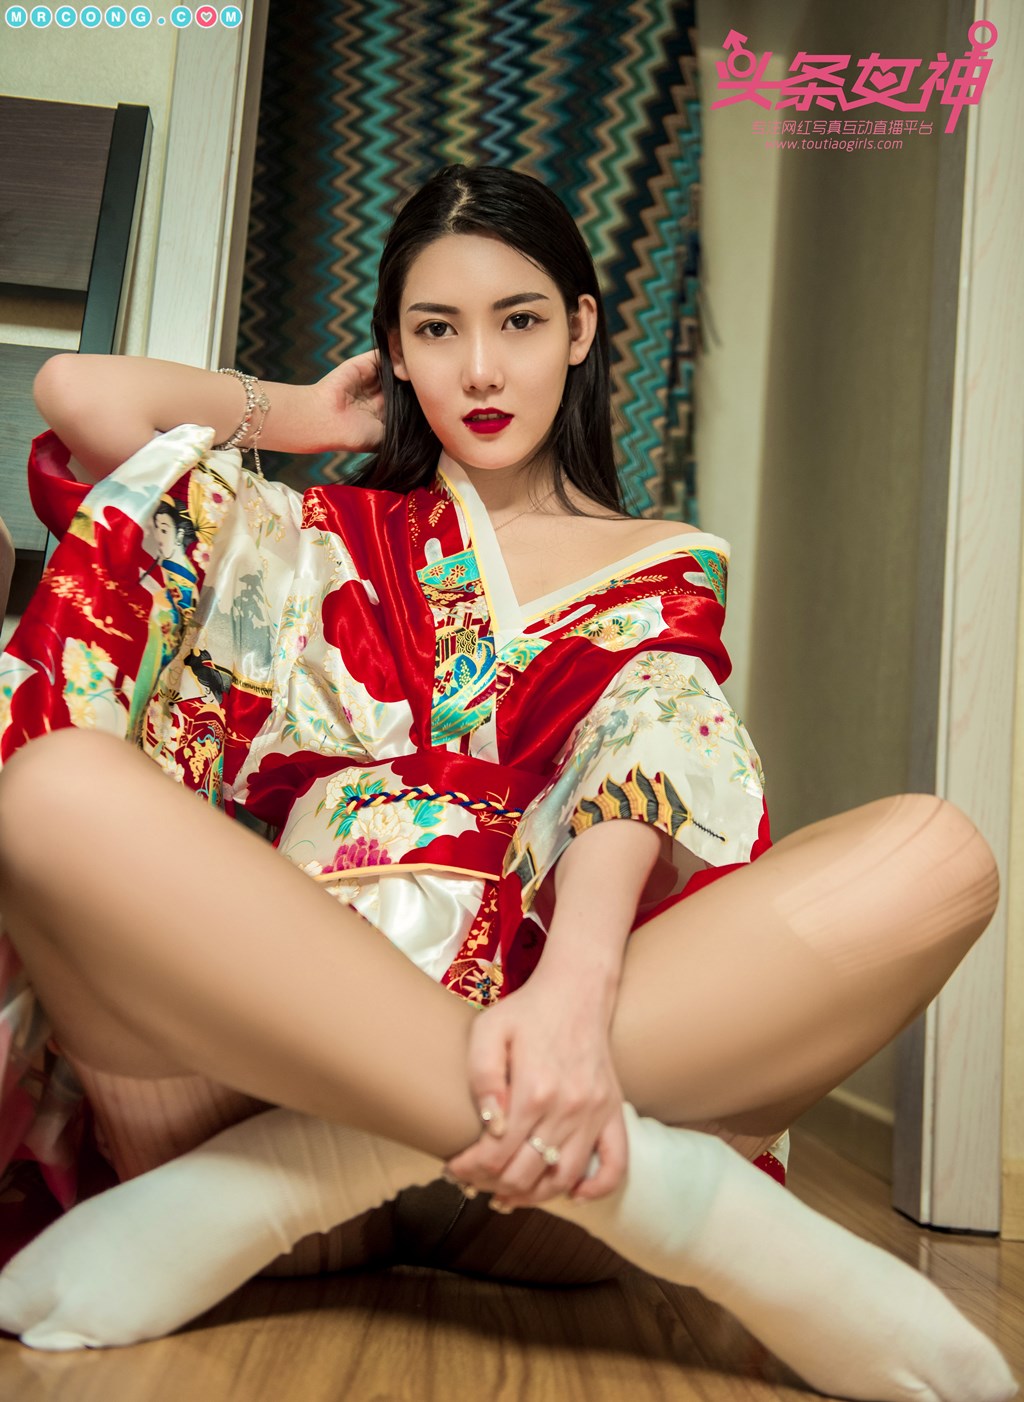 TouTiao 2018-04-08: Model Feng Xue Jiao (冯雪娇) (63 photos)